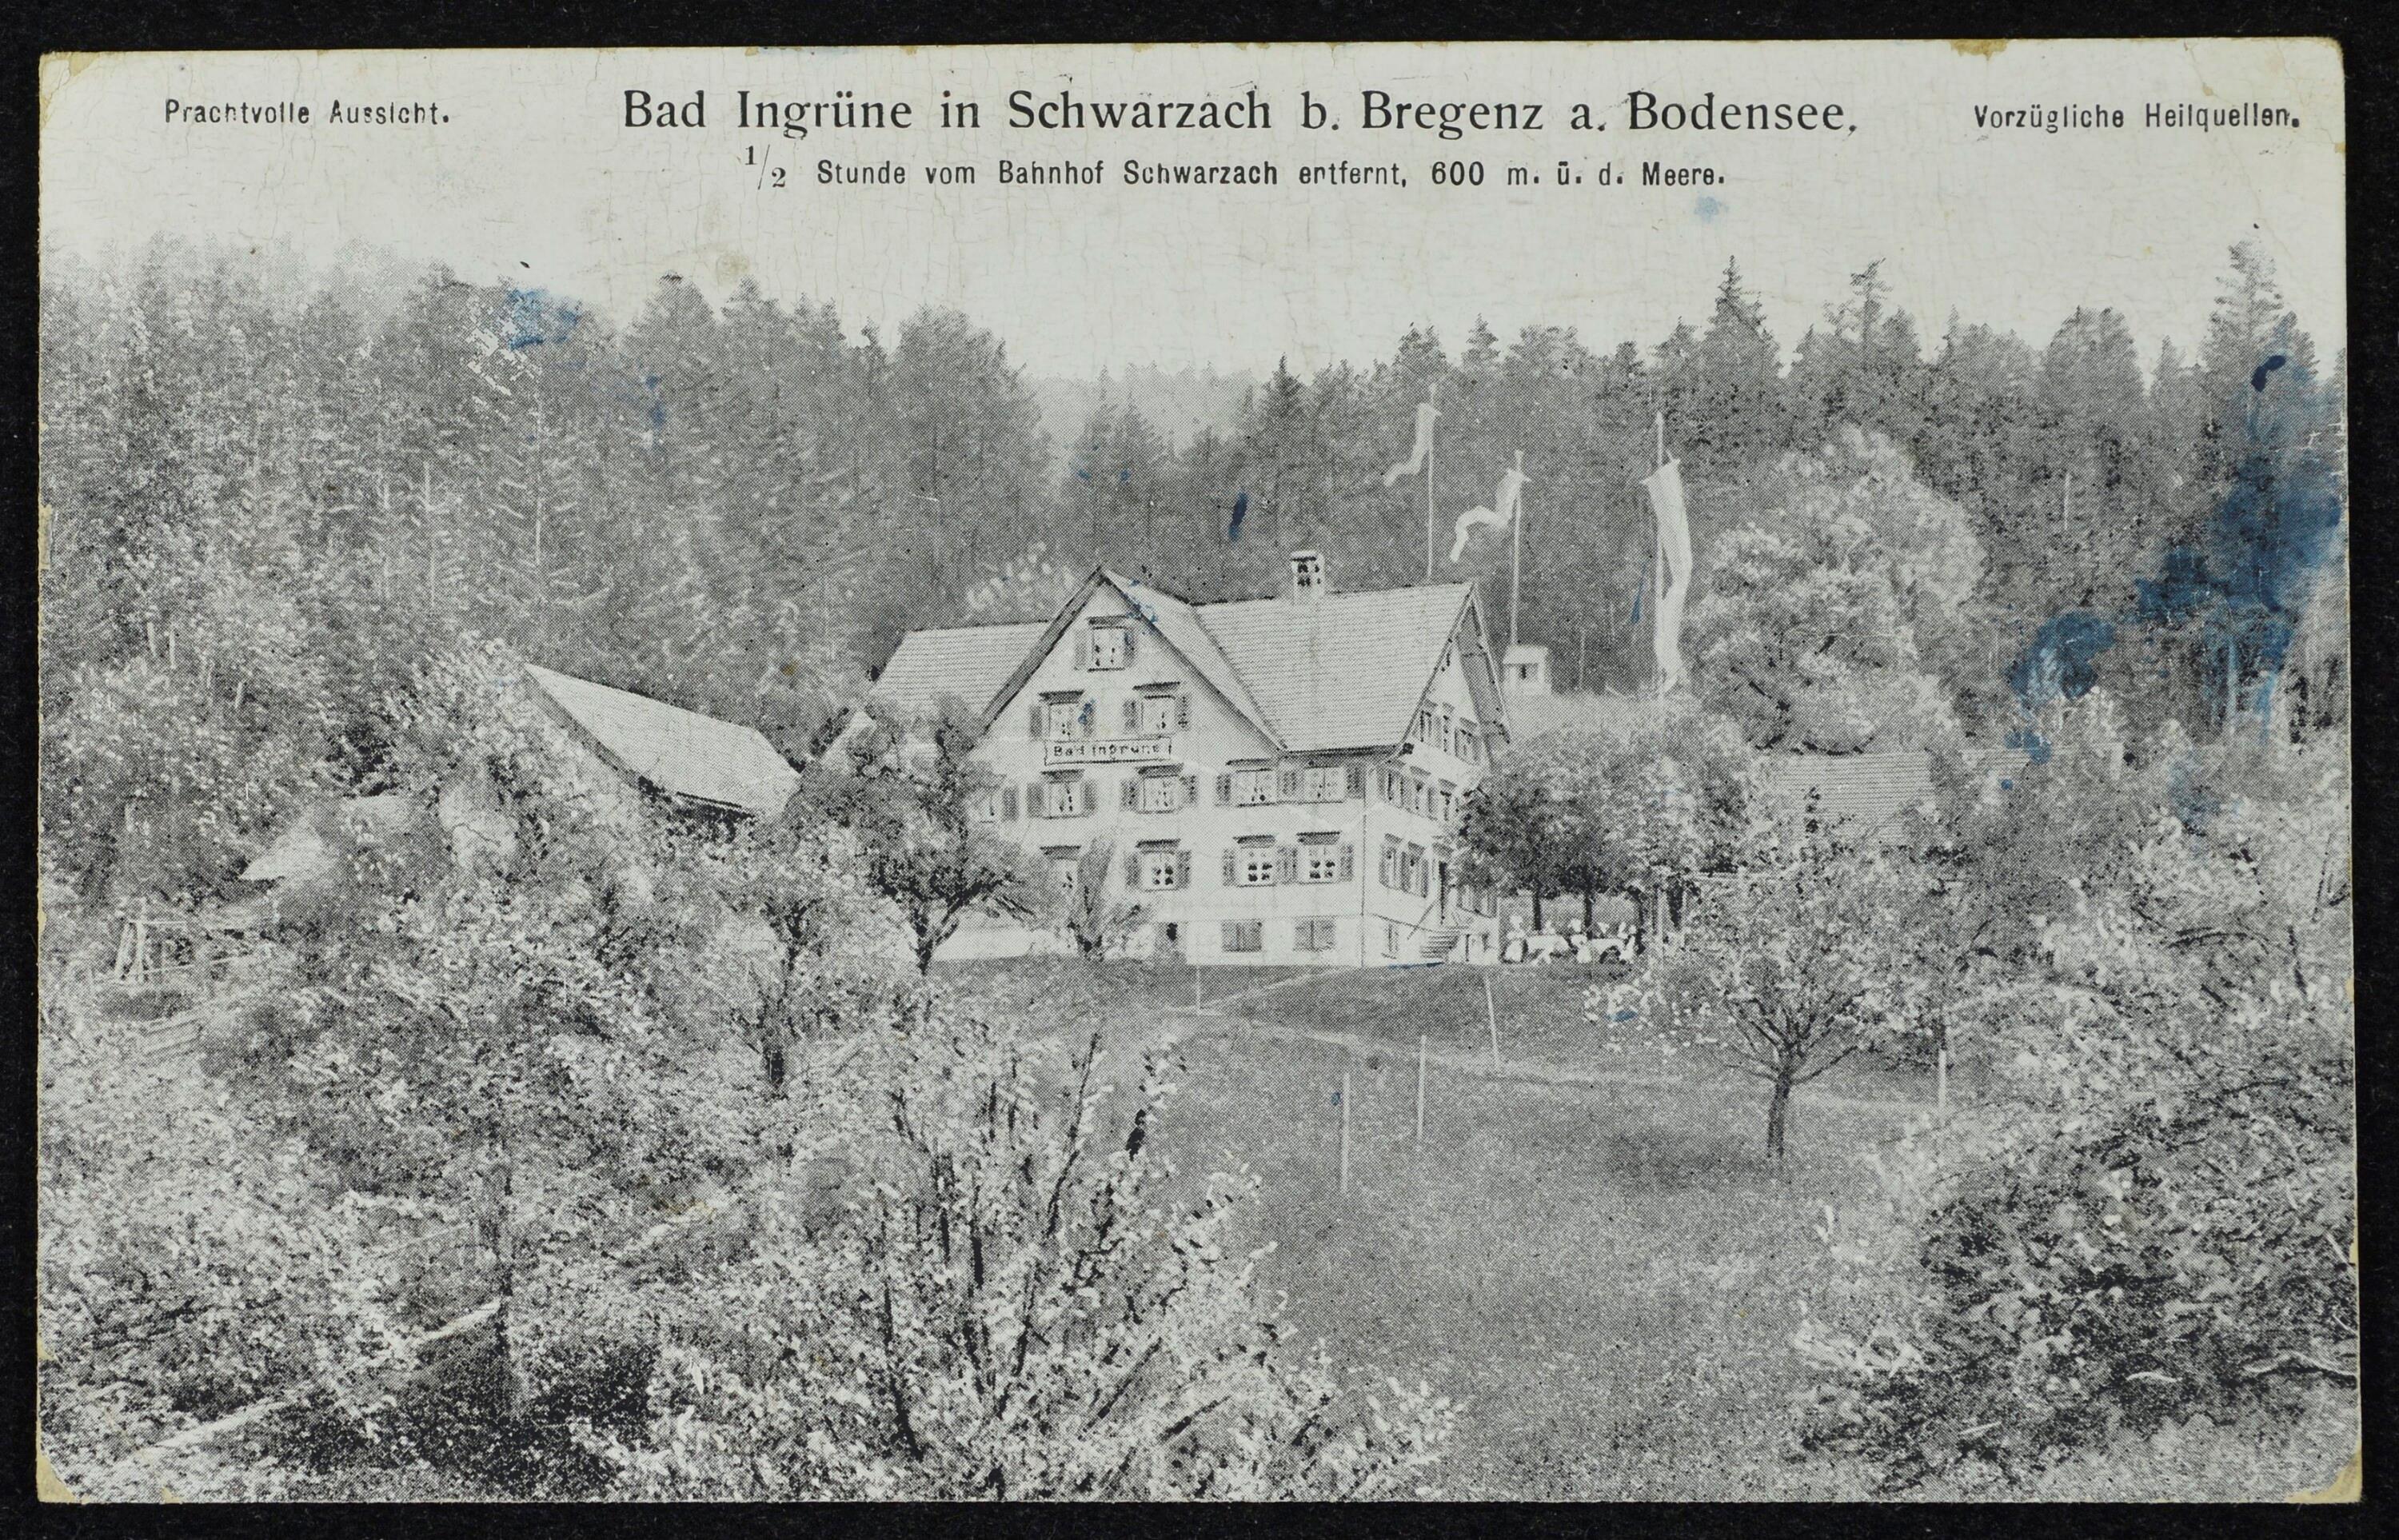 Bad Ingrüne in Schwarzach b. Bregenz a. Bodensee></div>


    <hr>
    <div class=